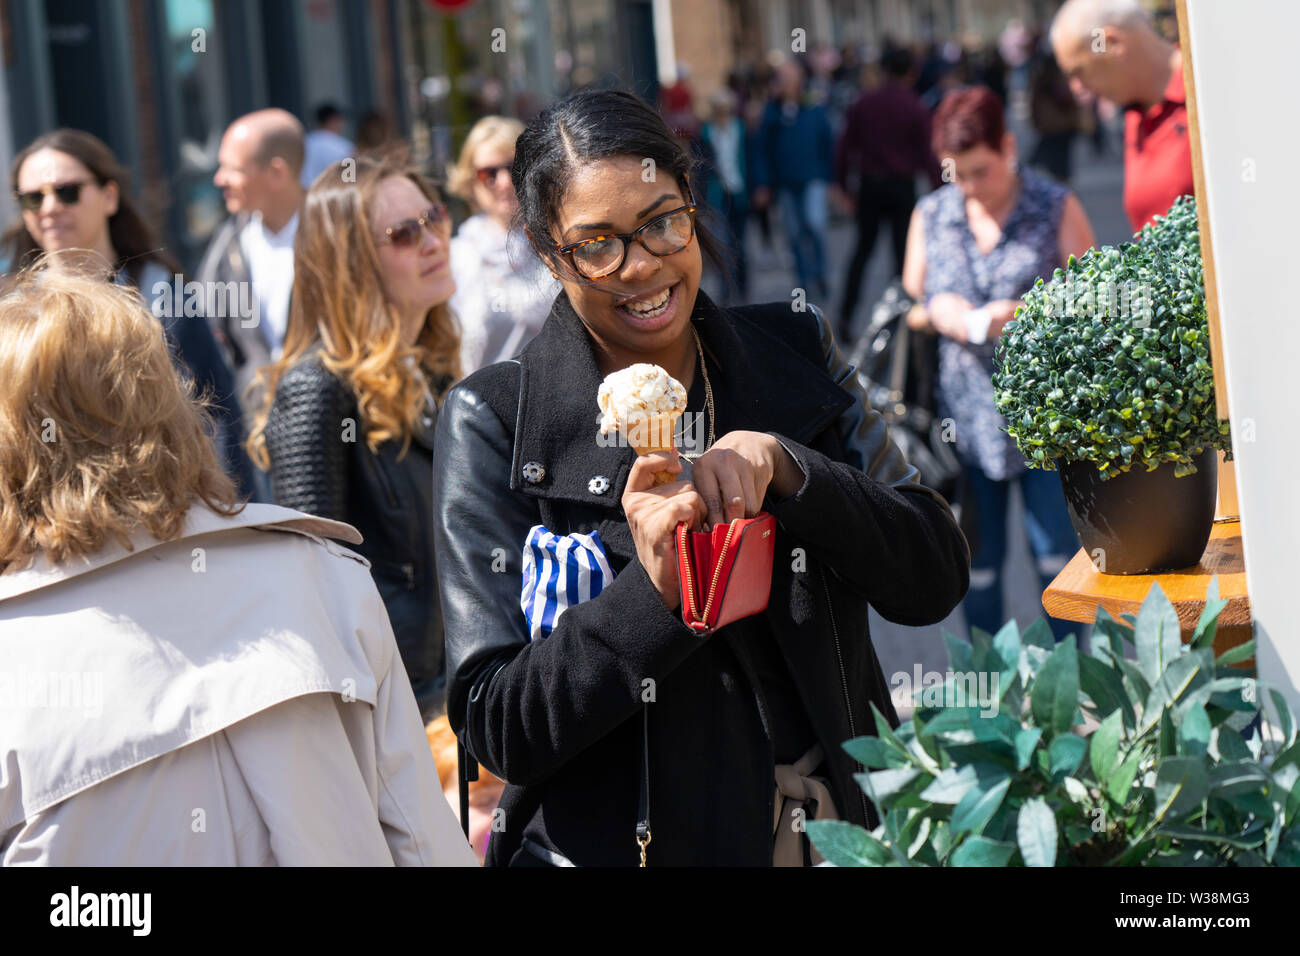 Femme tenant une crème glacée fraîchement achetée dans le centre de York, North Yorkshire, Angleterre, Royaume-Uni. Banque D'Images